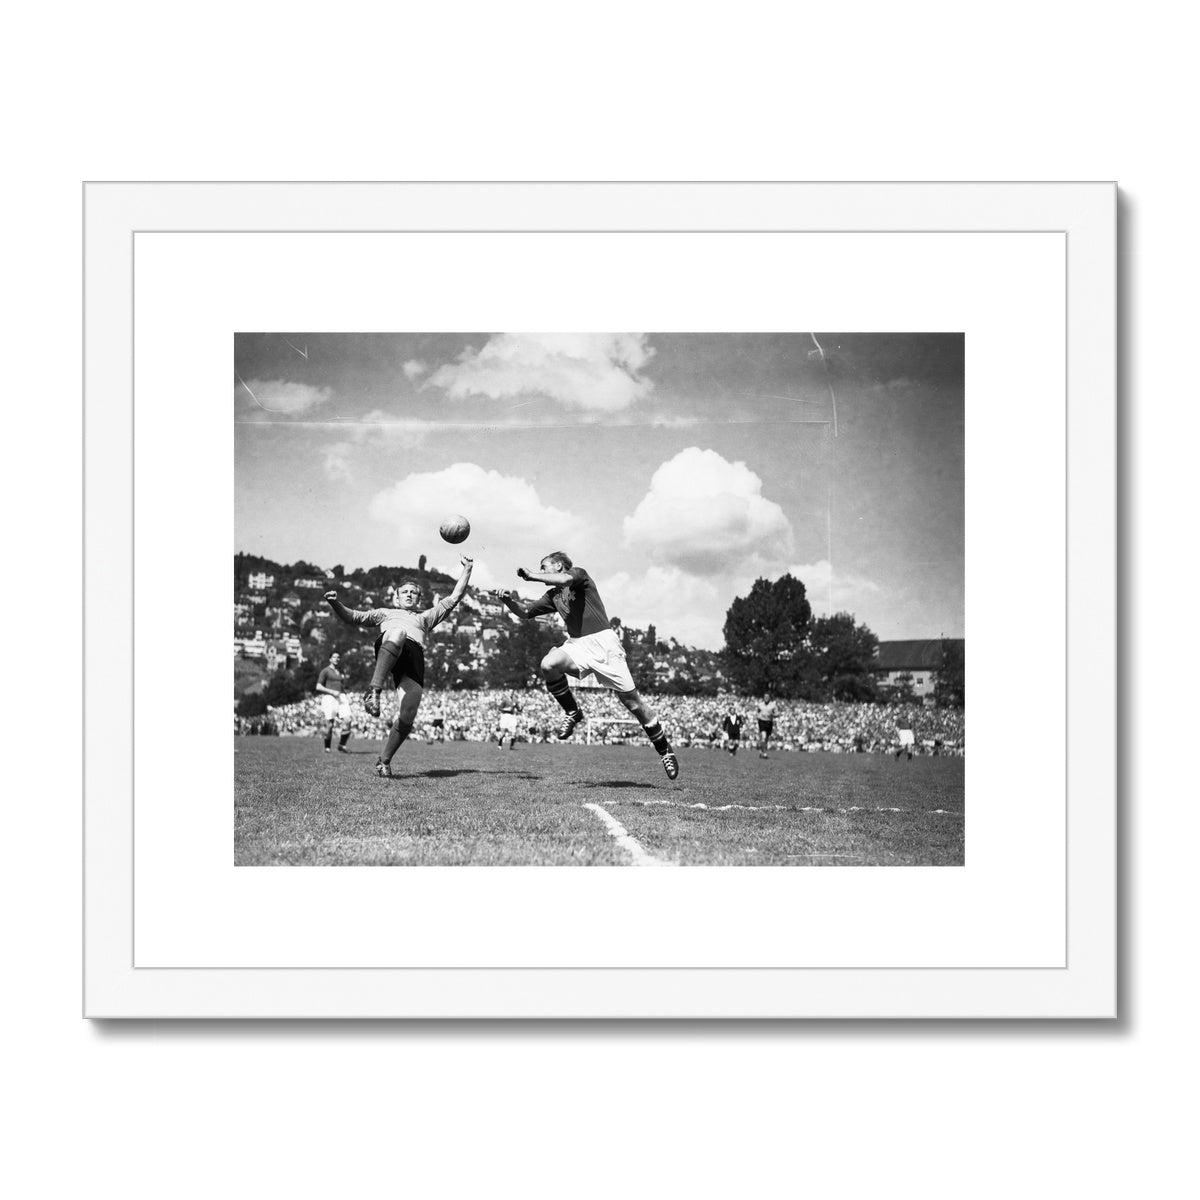 Fussball-Weltmeisterschaft 1954 : Testspiel Schweiz – Holland 3:1 (2:1) im Stadion Hardturm in Zürich. Gerahmt und hängefertig